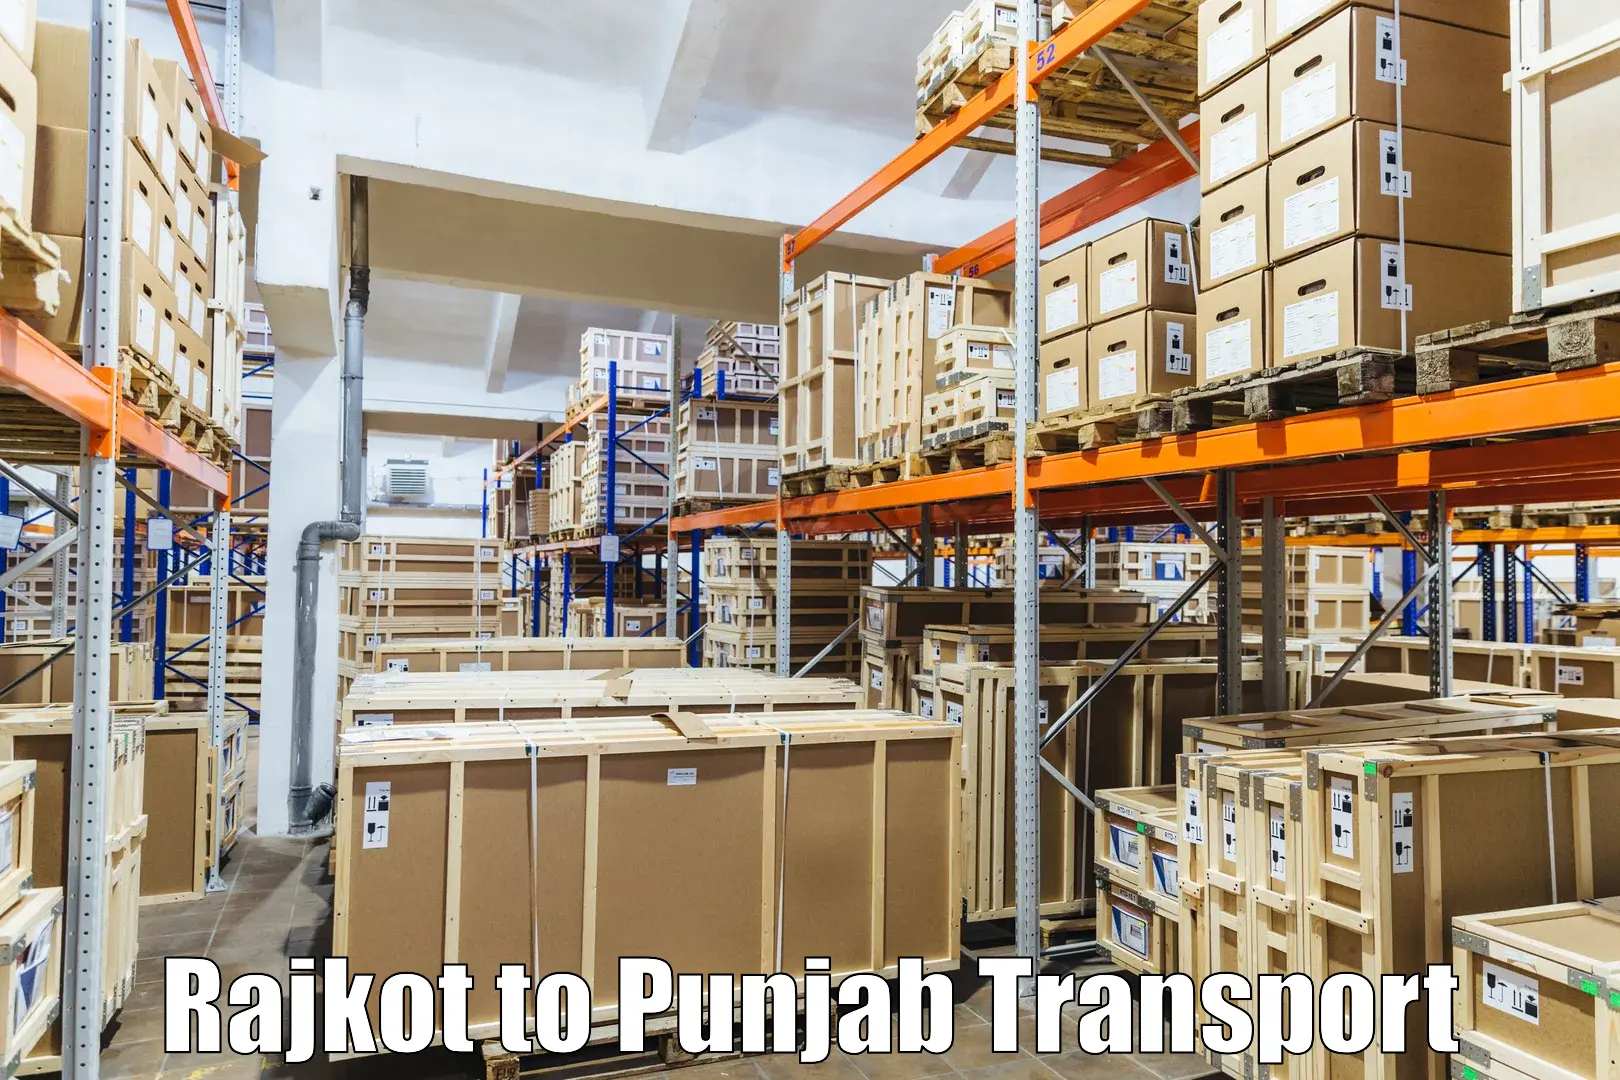 Transport in sharing Rajkot to Amritsar